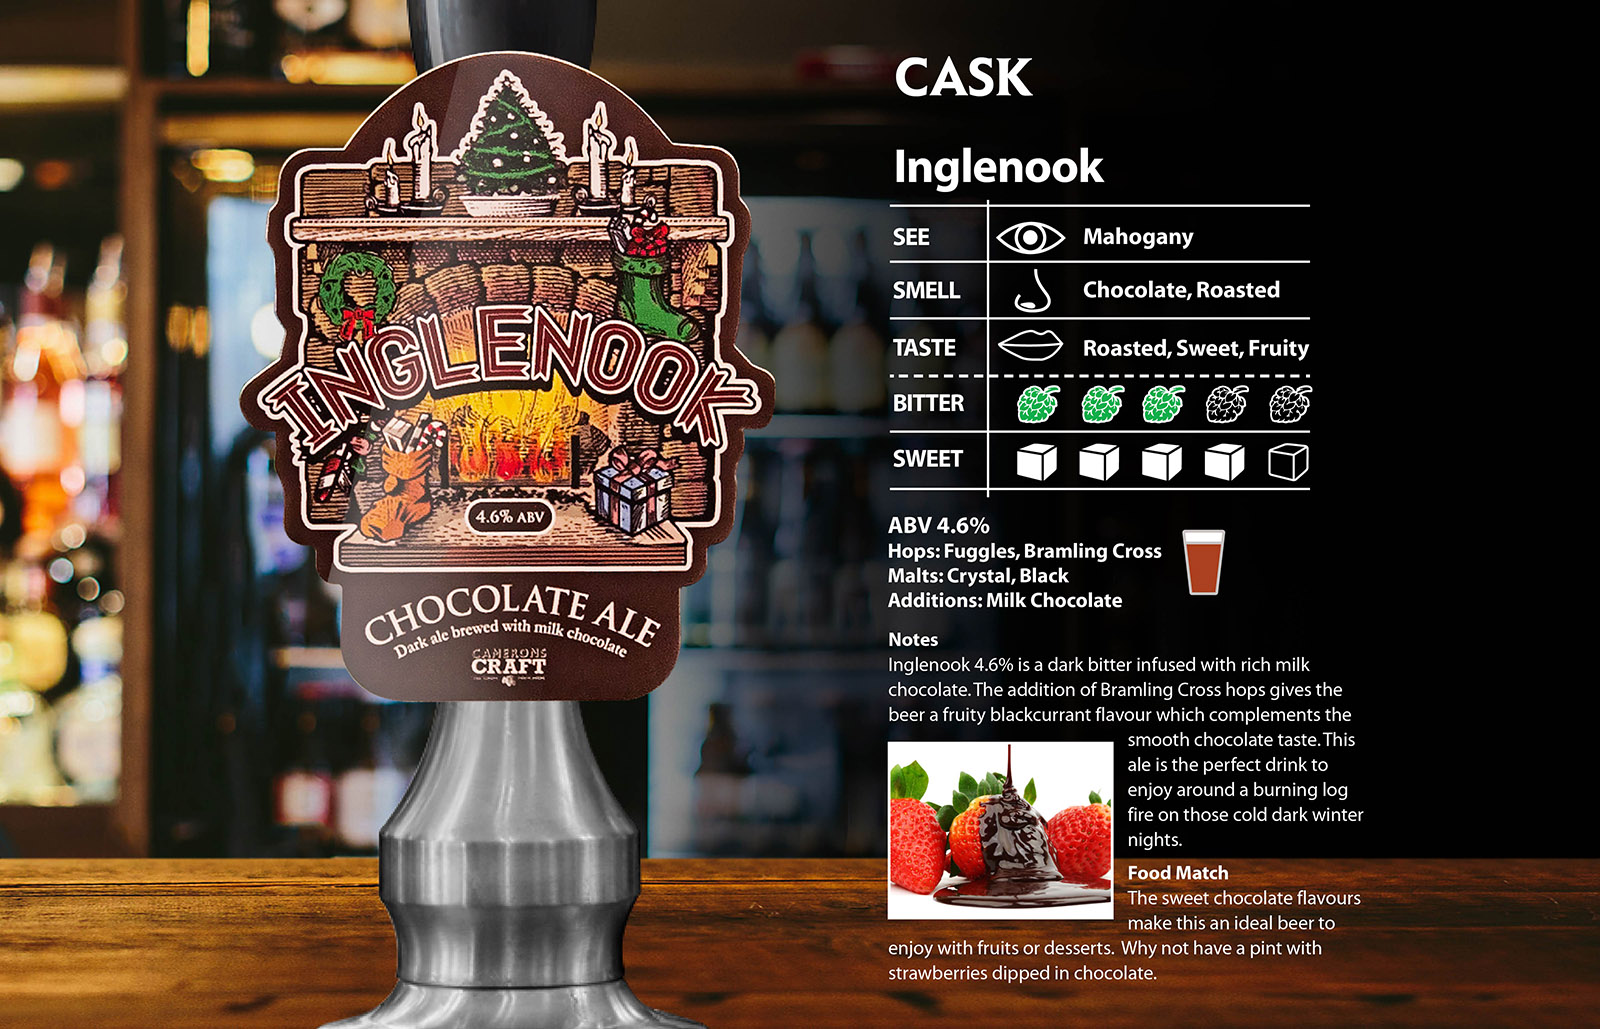 Inglenook Cask - cask - camerons brewery